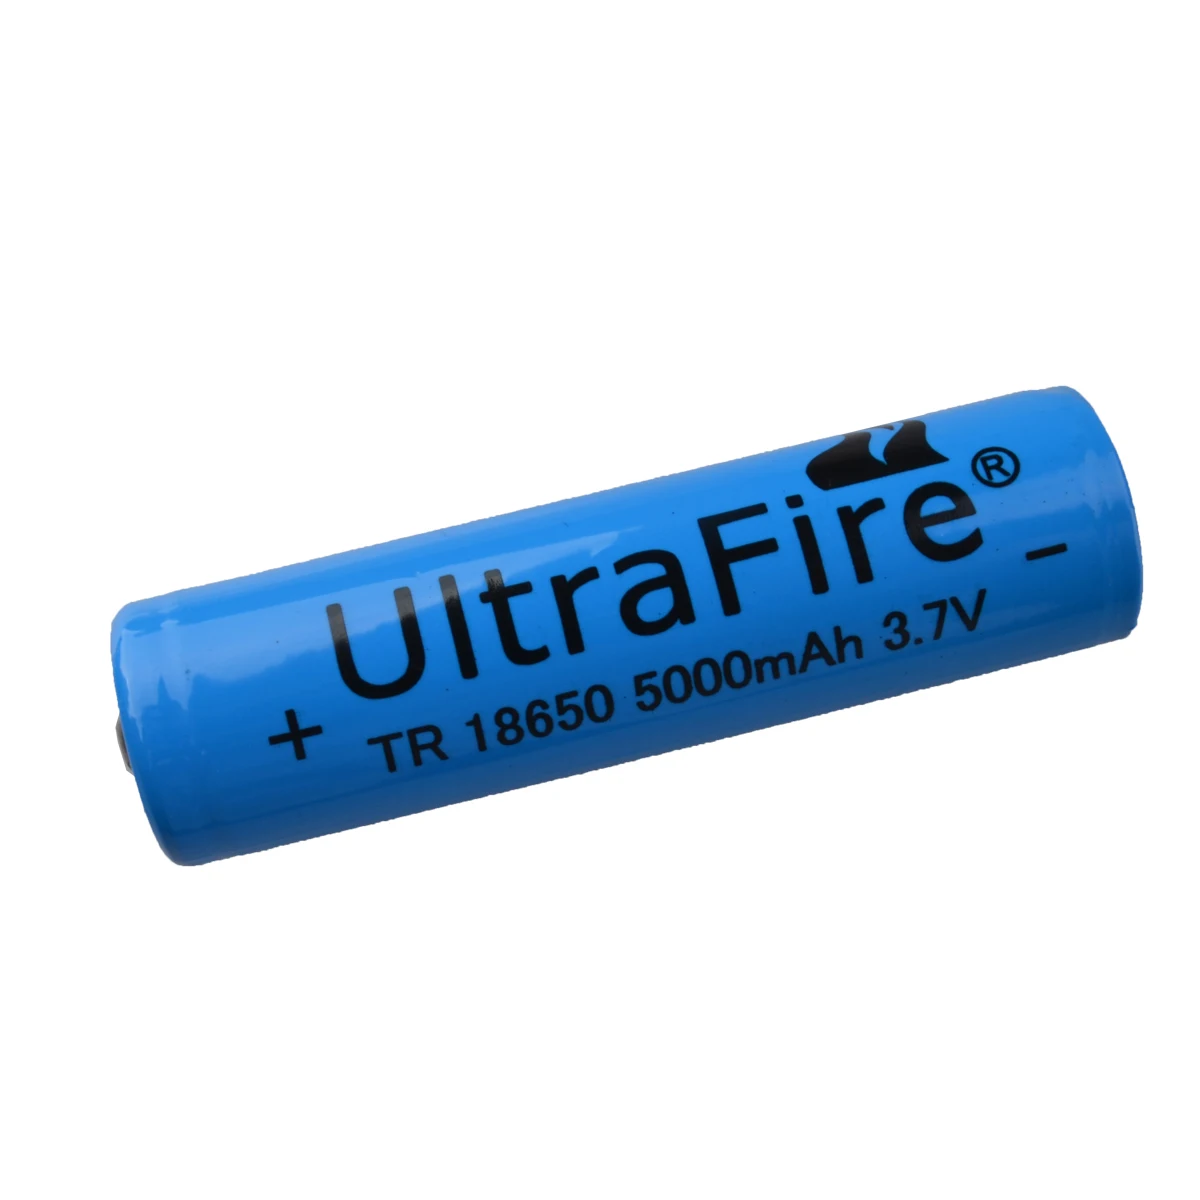 UltraFire Ultrafire kc-01 led torch 